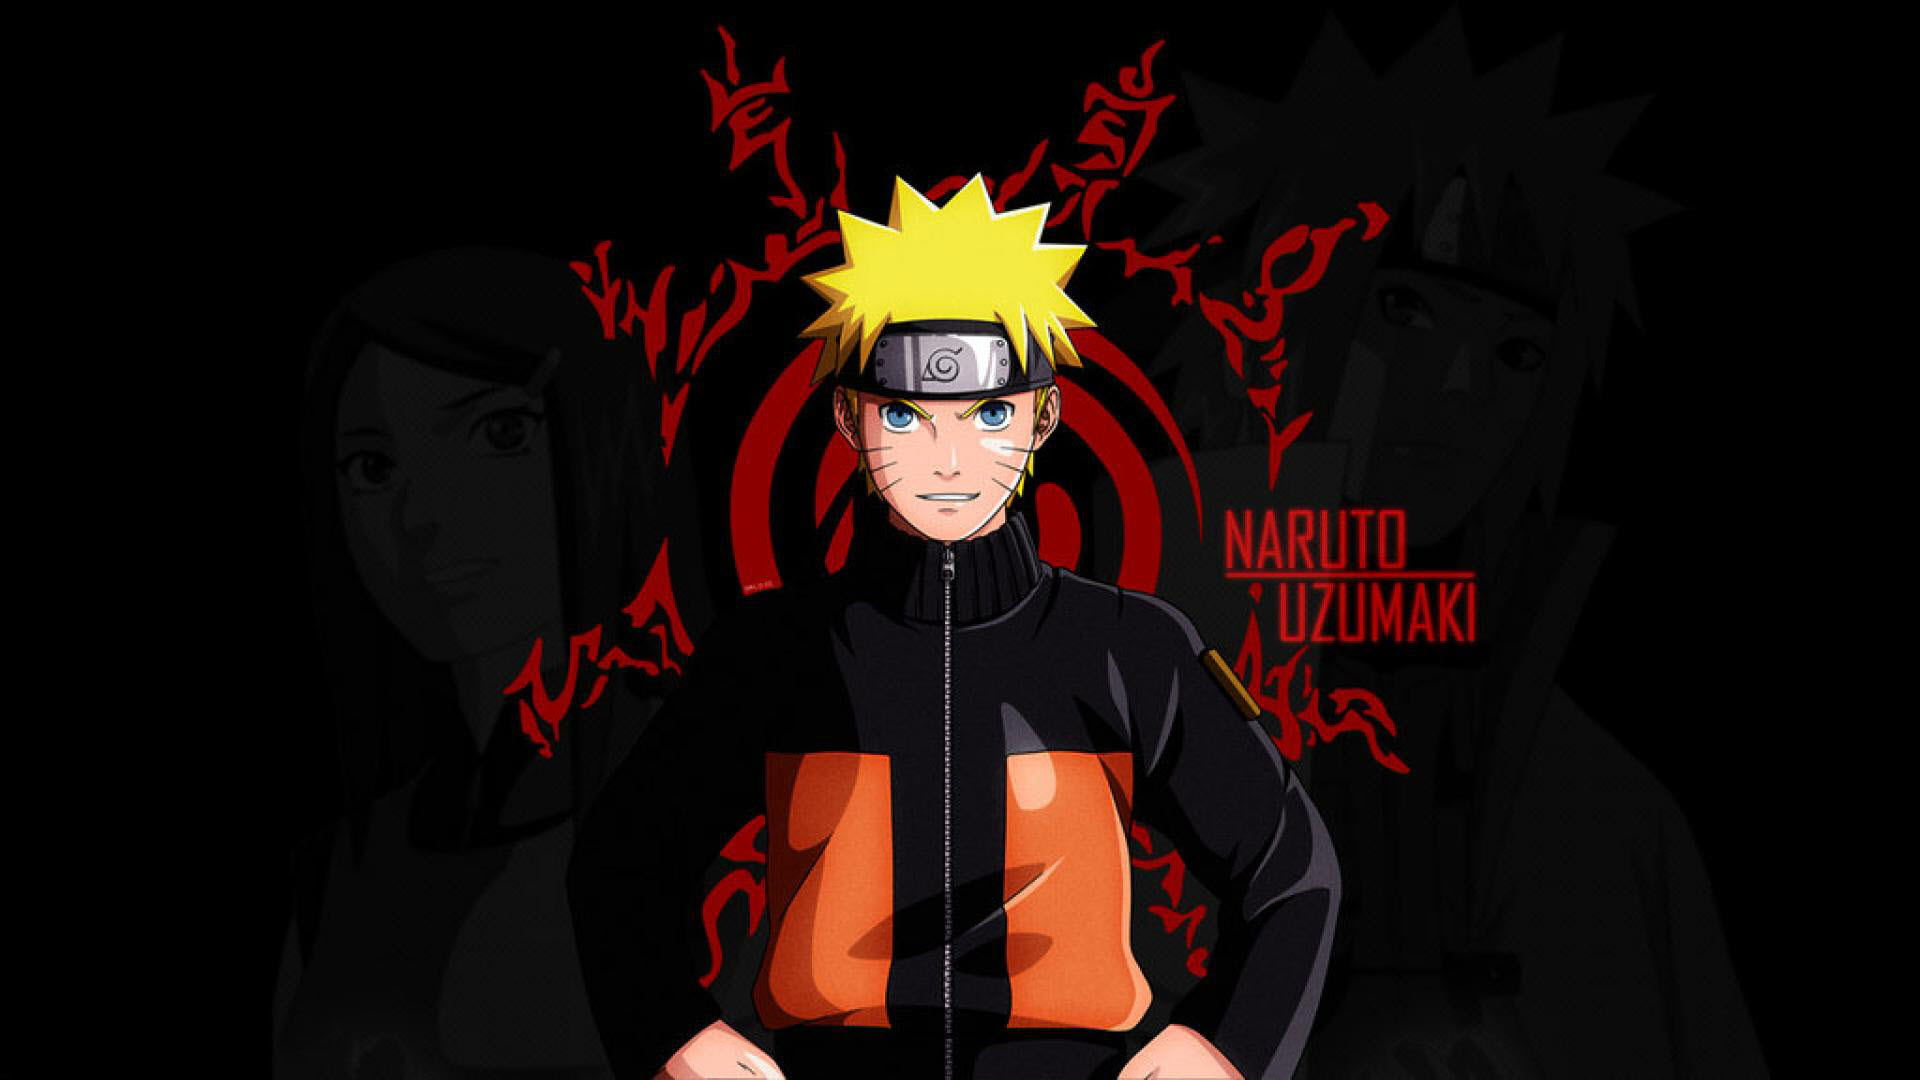 hinh Naruto